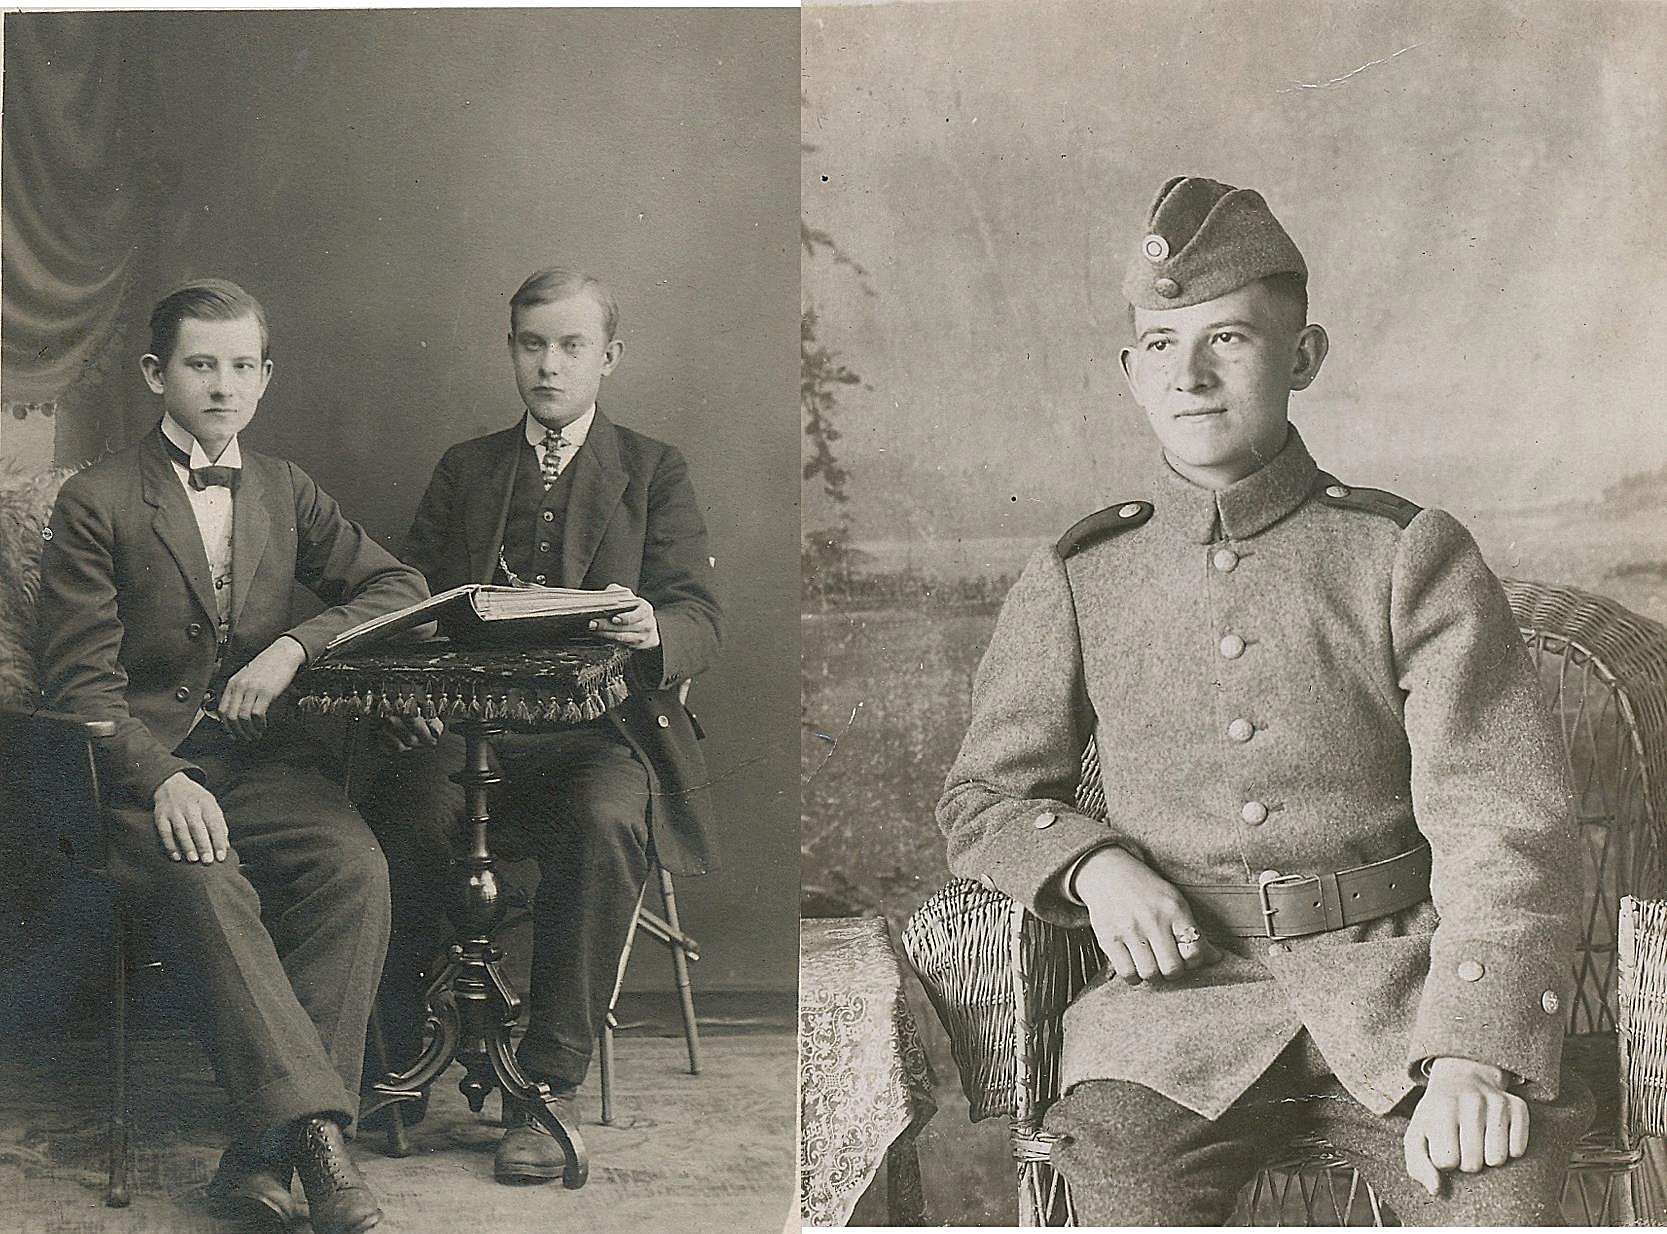 På bilden till vänster Oskar tillsammans med sin bror Frans ungefär år 1916. På bilden till höger Oskar i den nybildade finska militären, troligtvis 1918 just då Finland blivit självständigt.